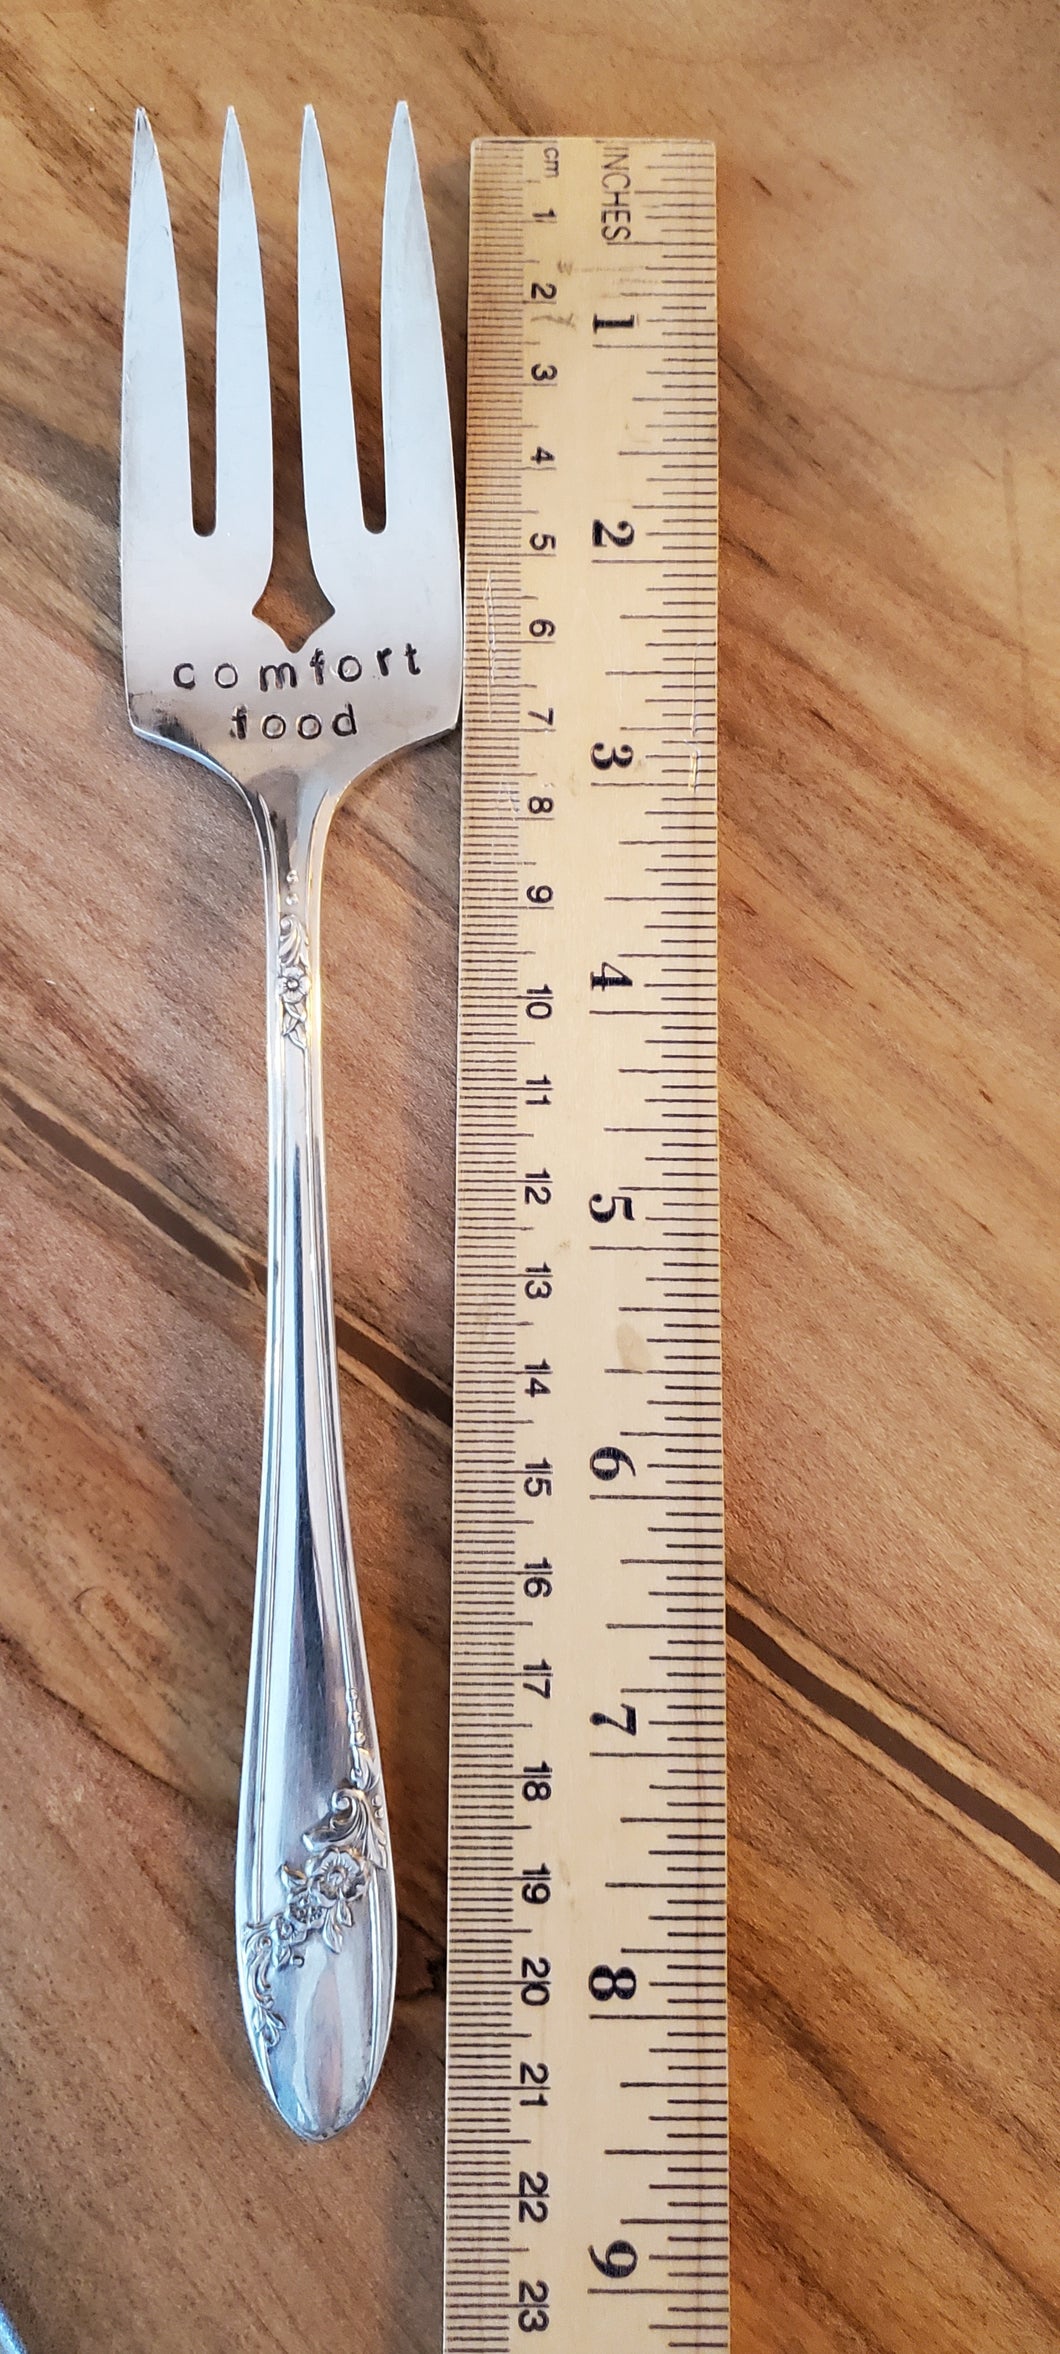 Comfort Food Stamped Serving Fork